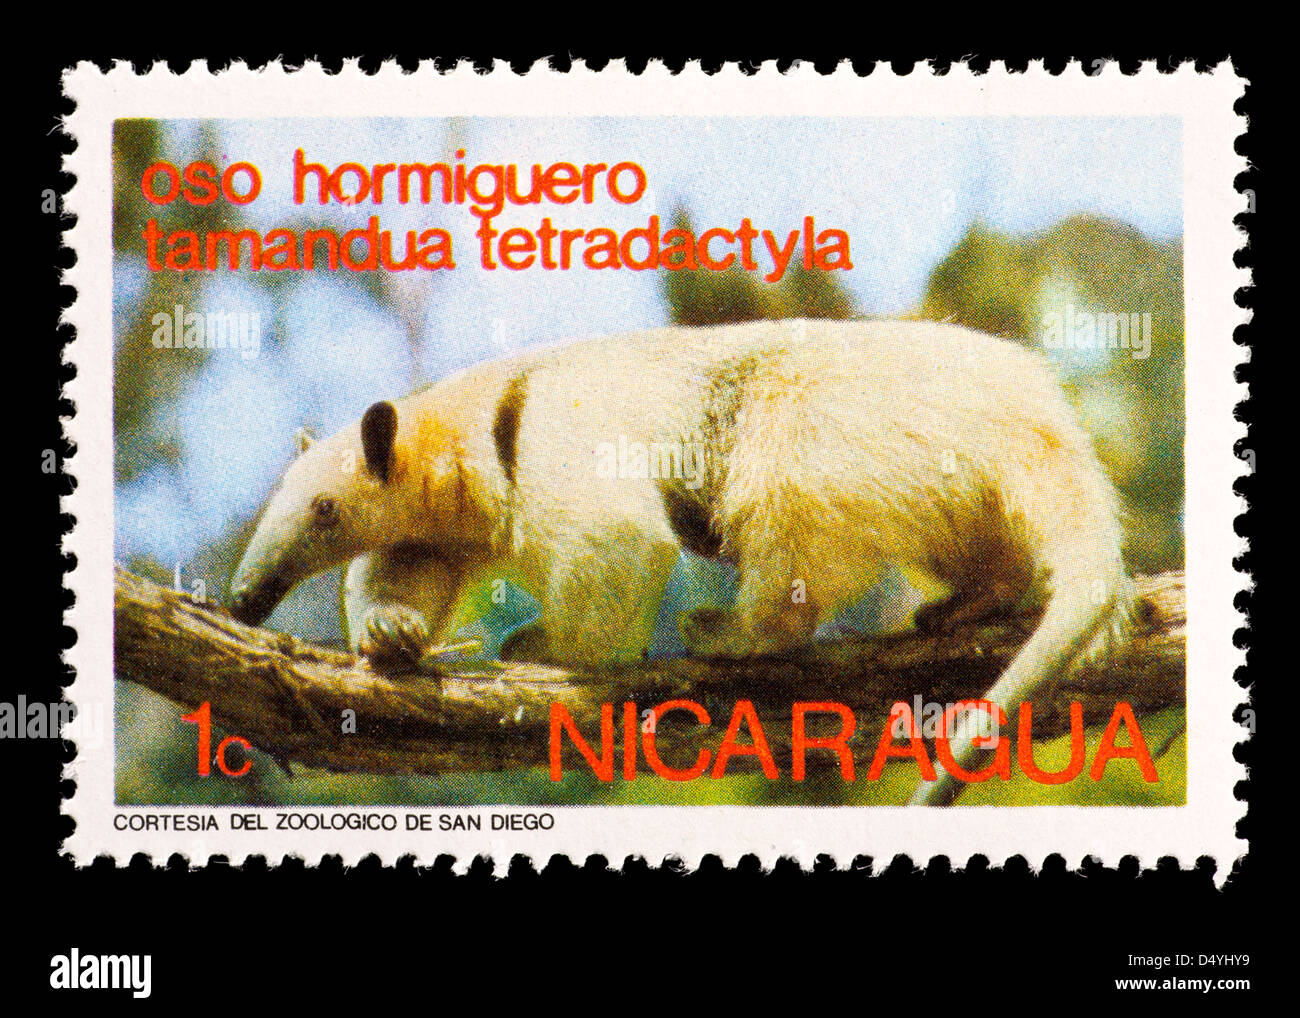 Sello de Nicaragua representando un sur o tamandua collared oso hormiguero (Tamandua tetradactyla) Foto de stock